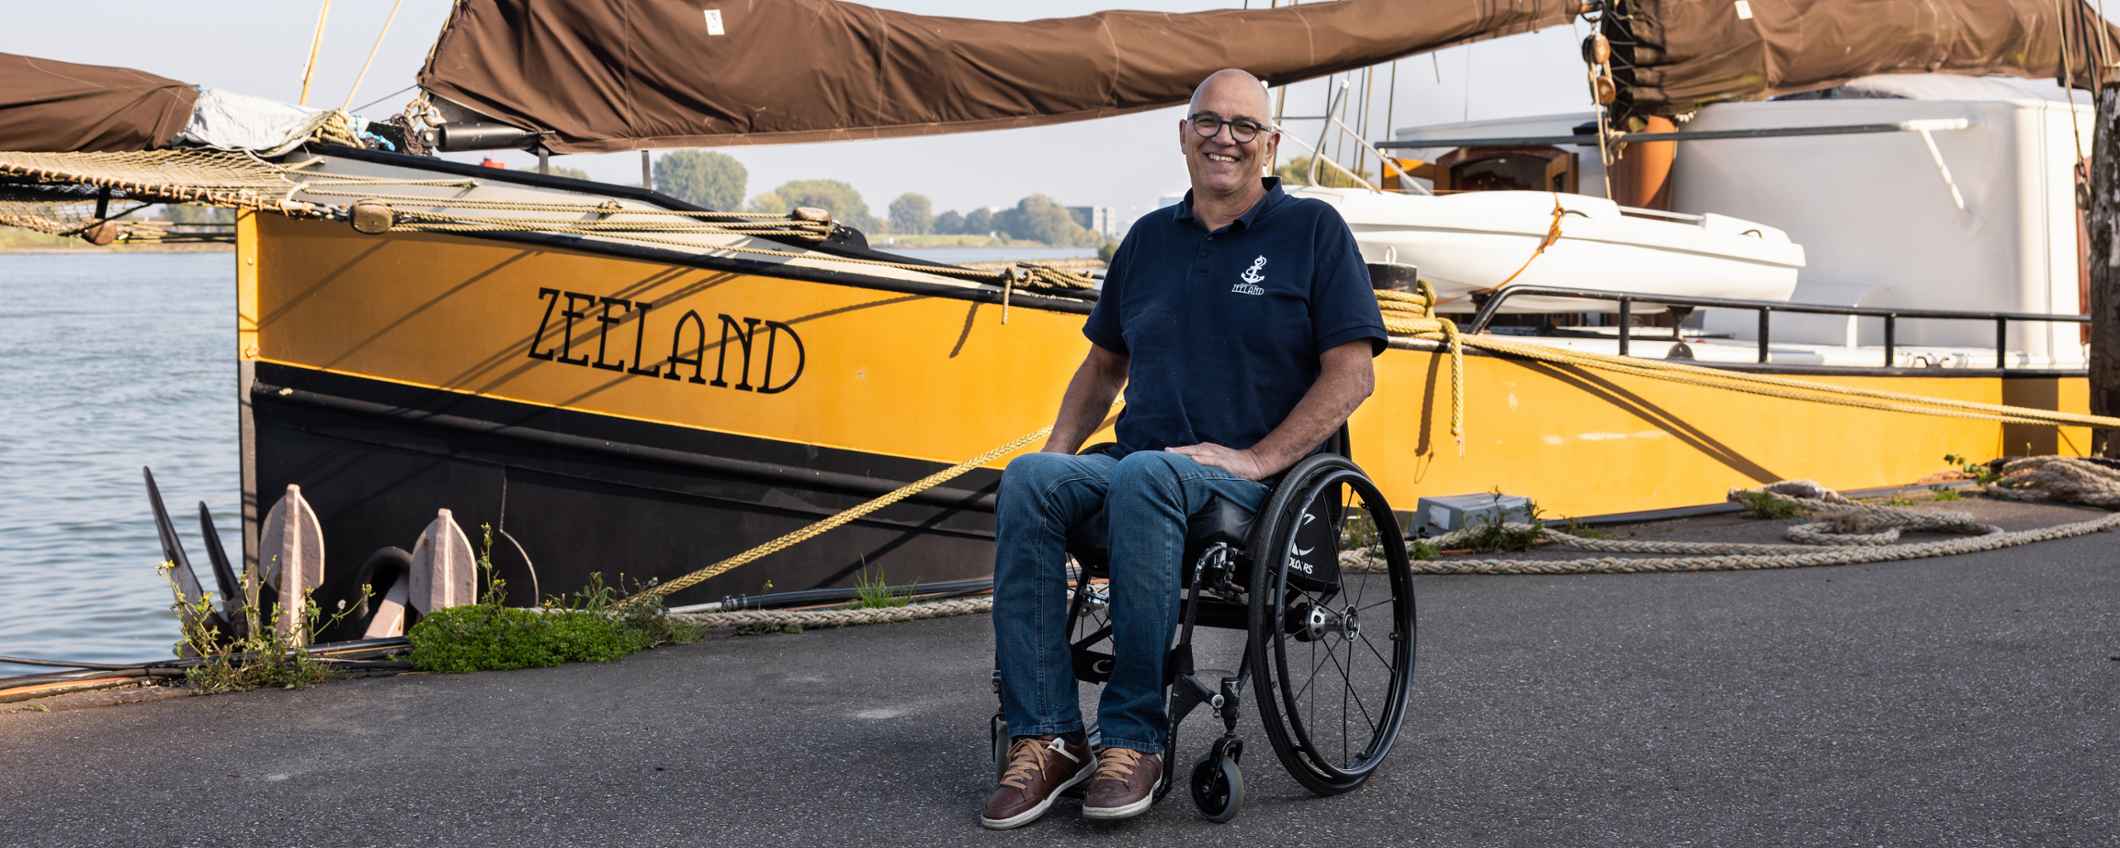 Peter van't Wout (NL), oprichter van de Stichting Zeeland die een schip ombouwde tot aangepast voor mensen met een handicap. Foto: Jurre Rompa.